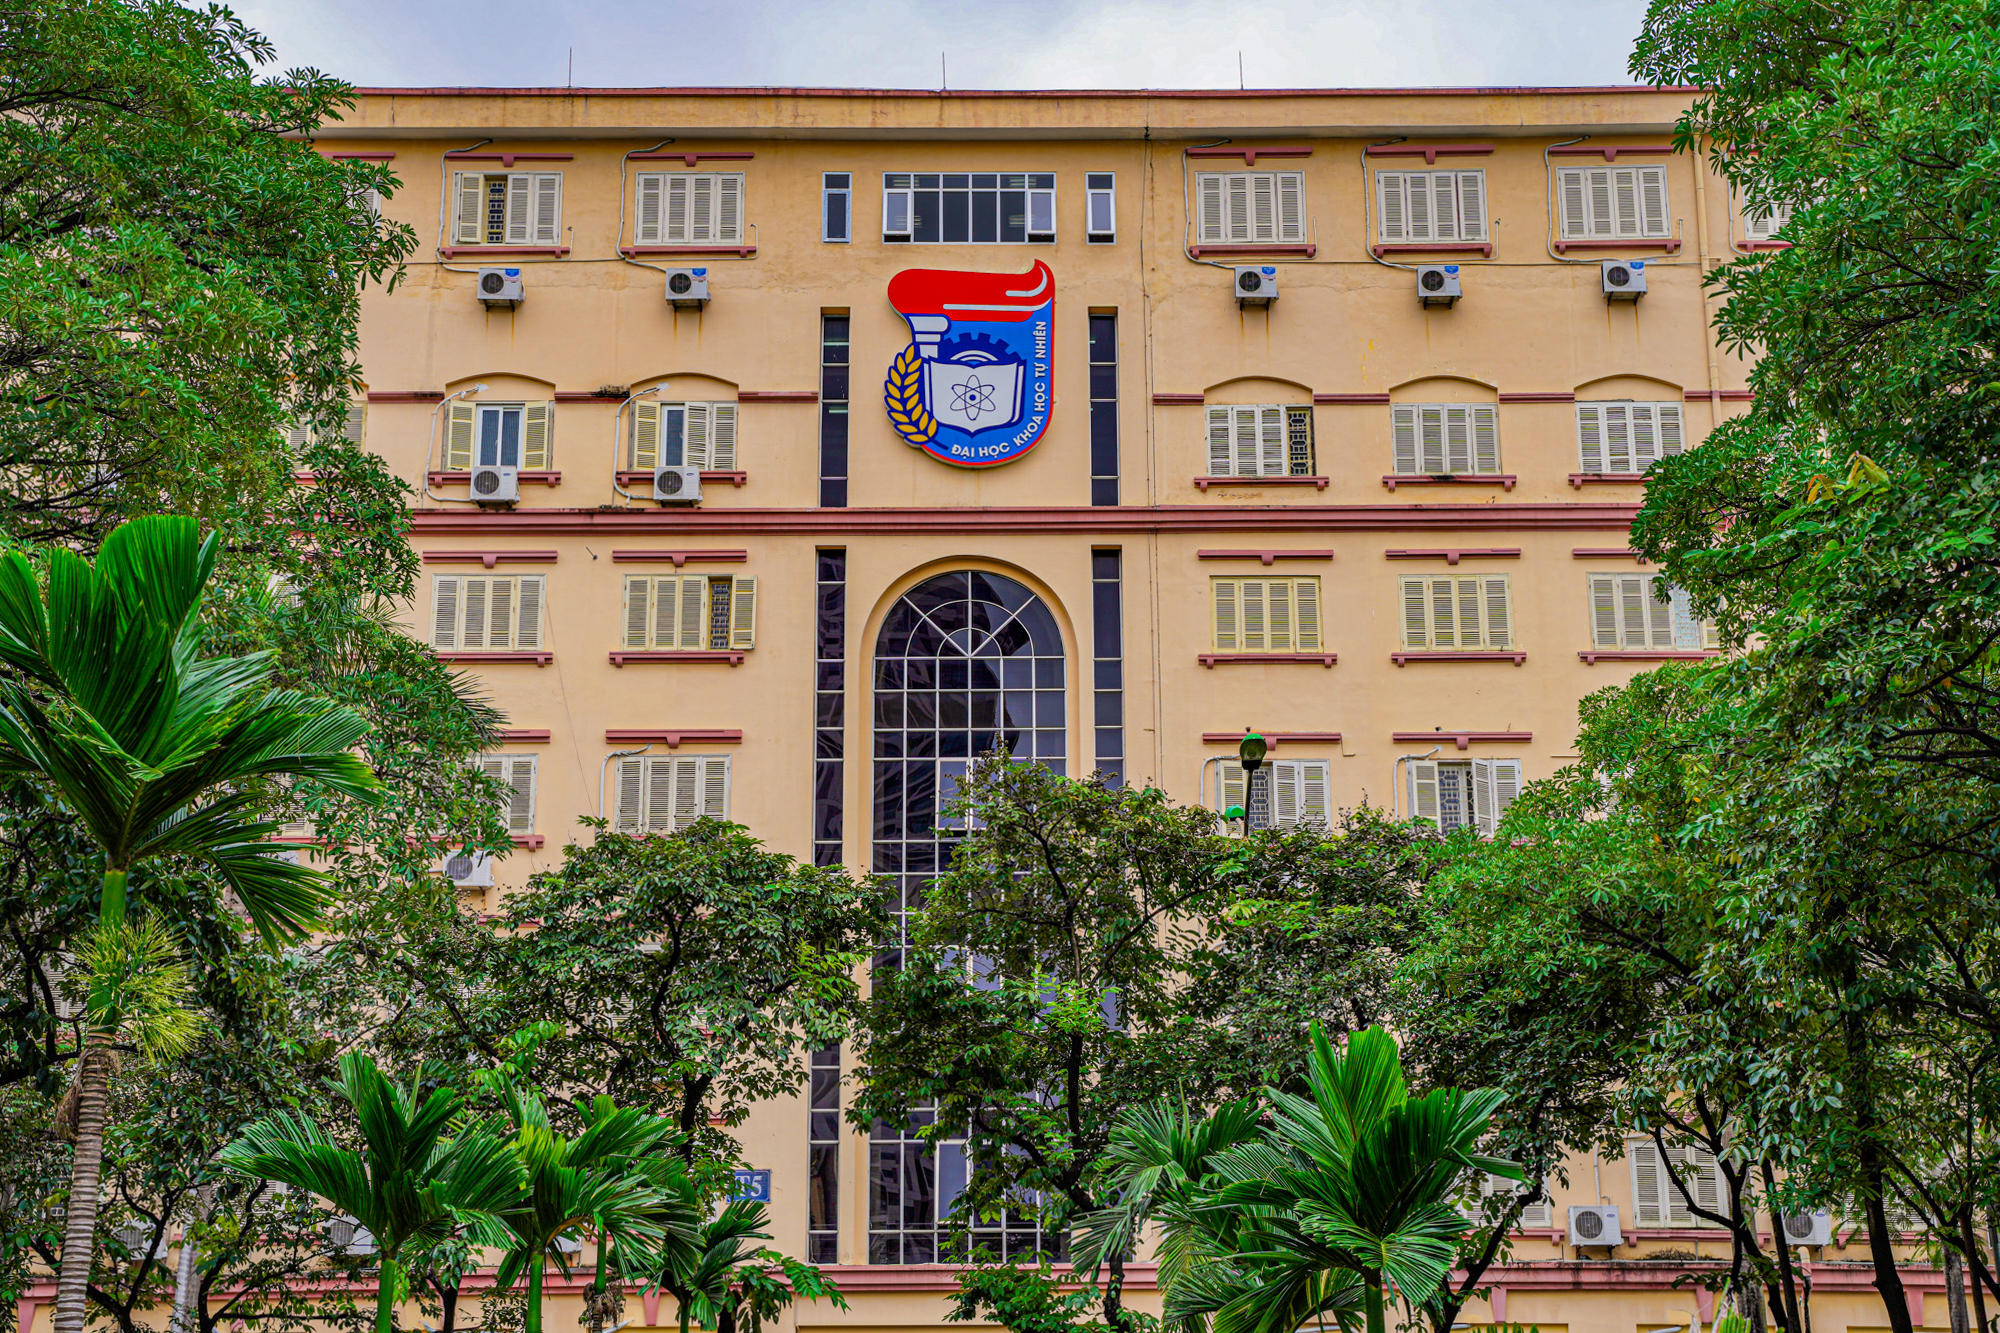 Trường đại học khoa học cơ bản, có bề dày 66 năm truyền thống ở Hà Nội - Ảnh 5.